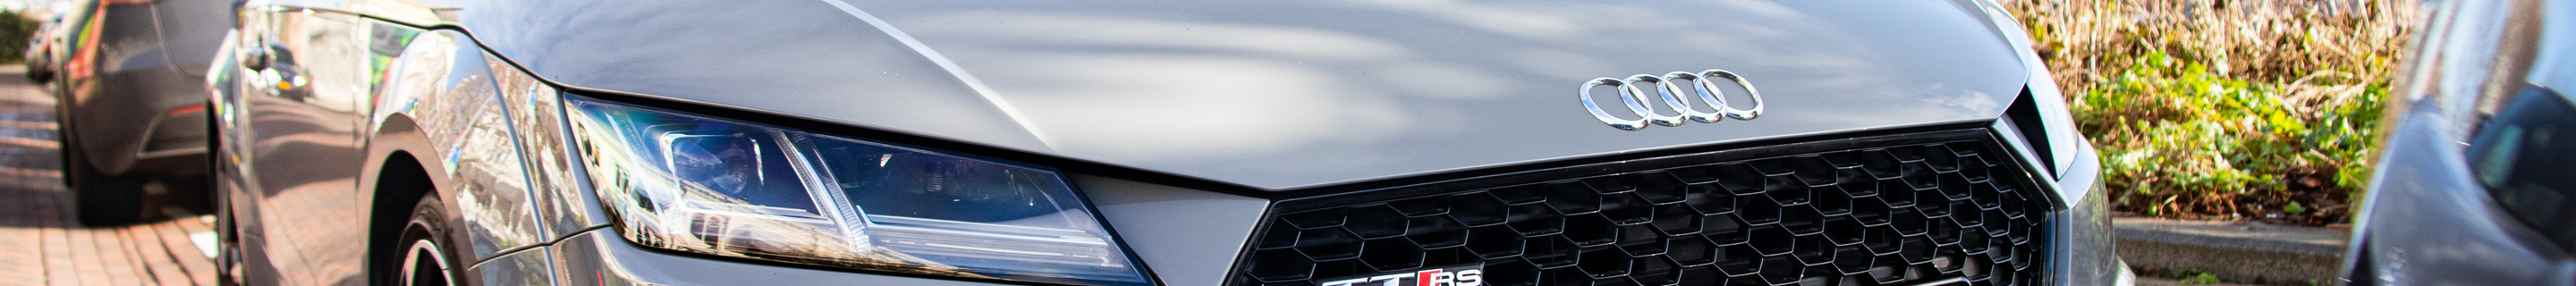 Audi TT-RS 2017